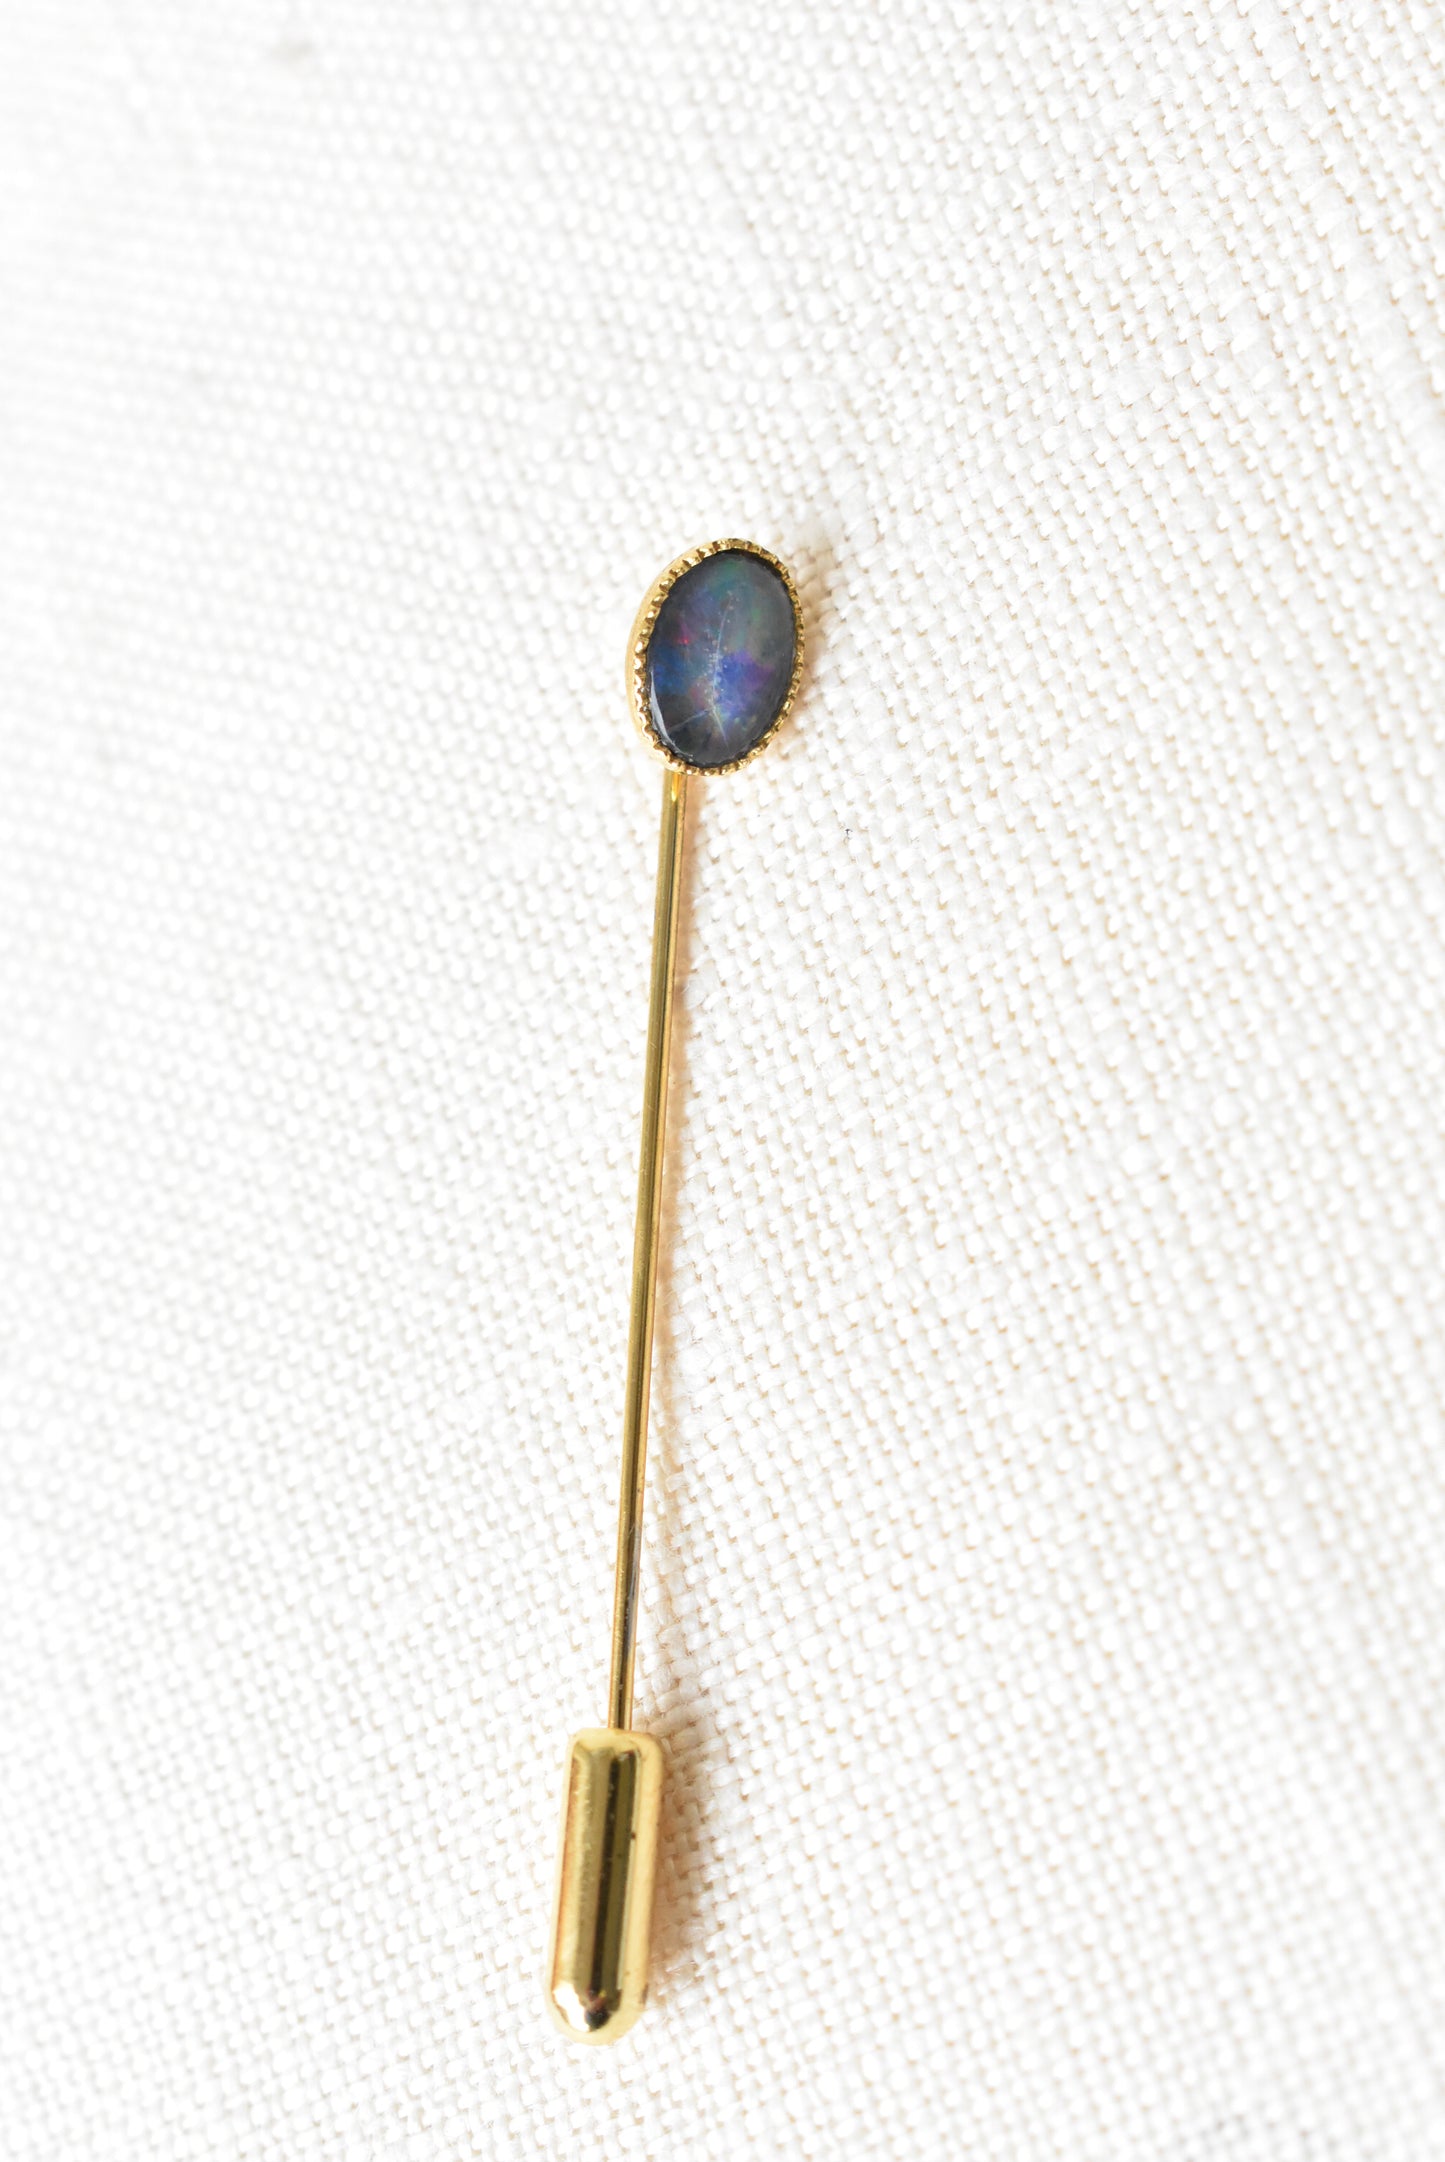 Australian Opal pin